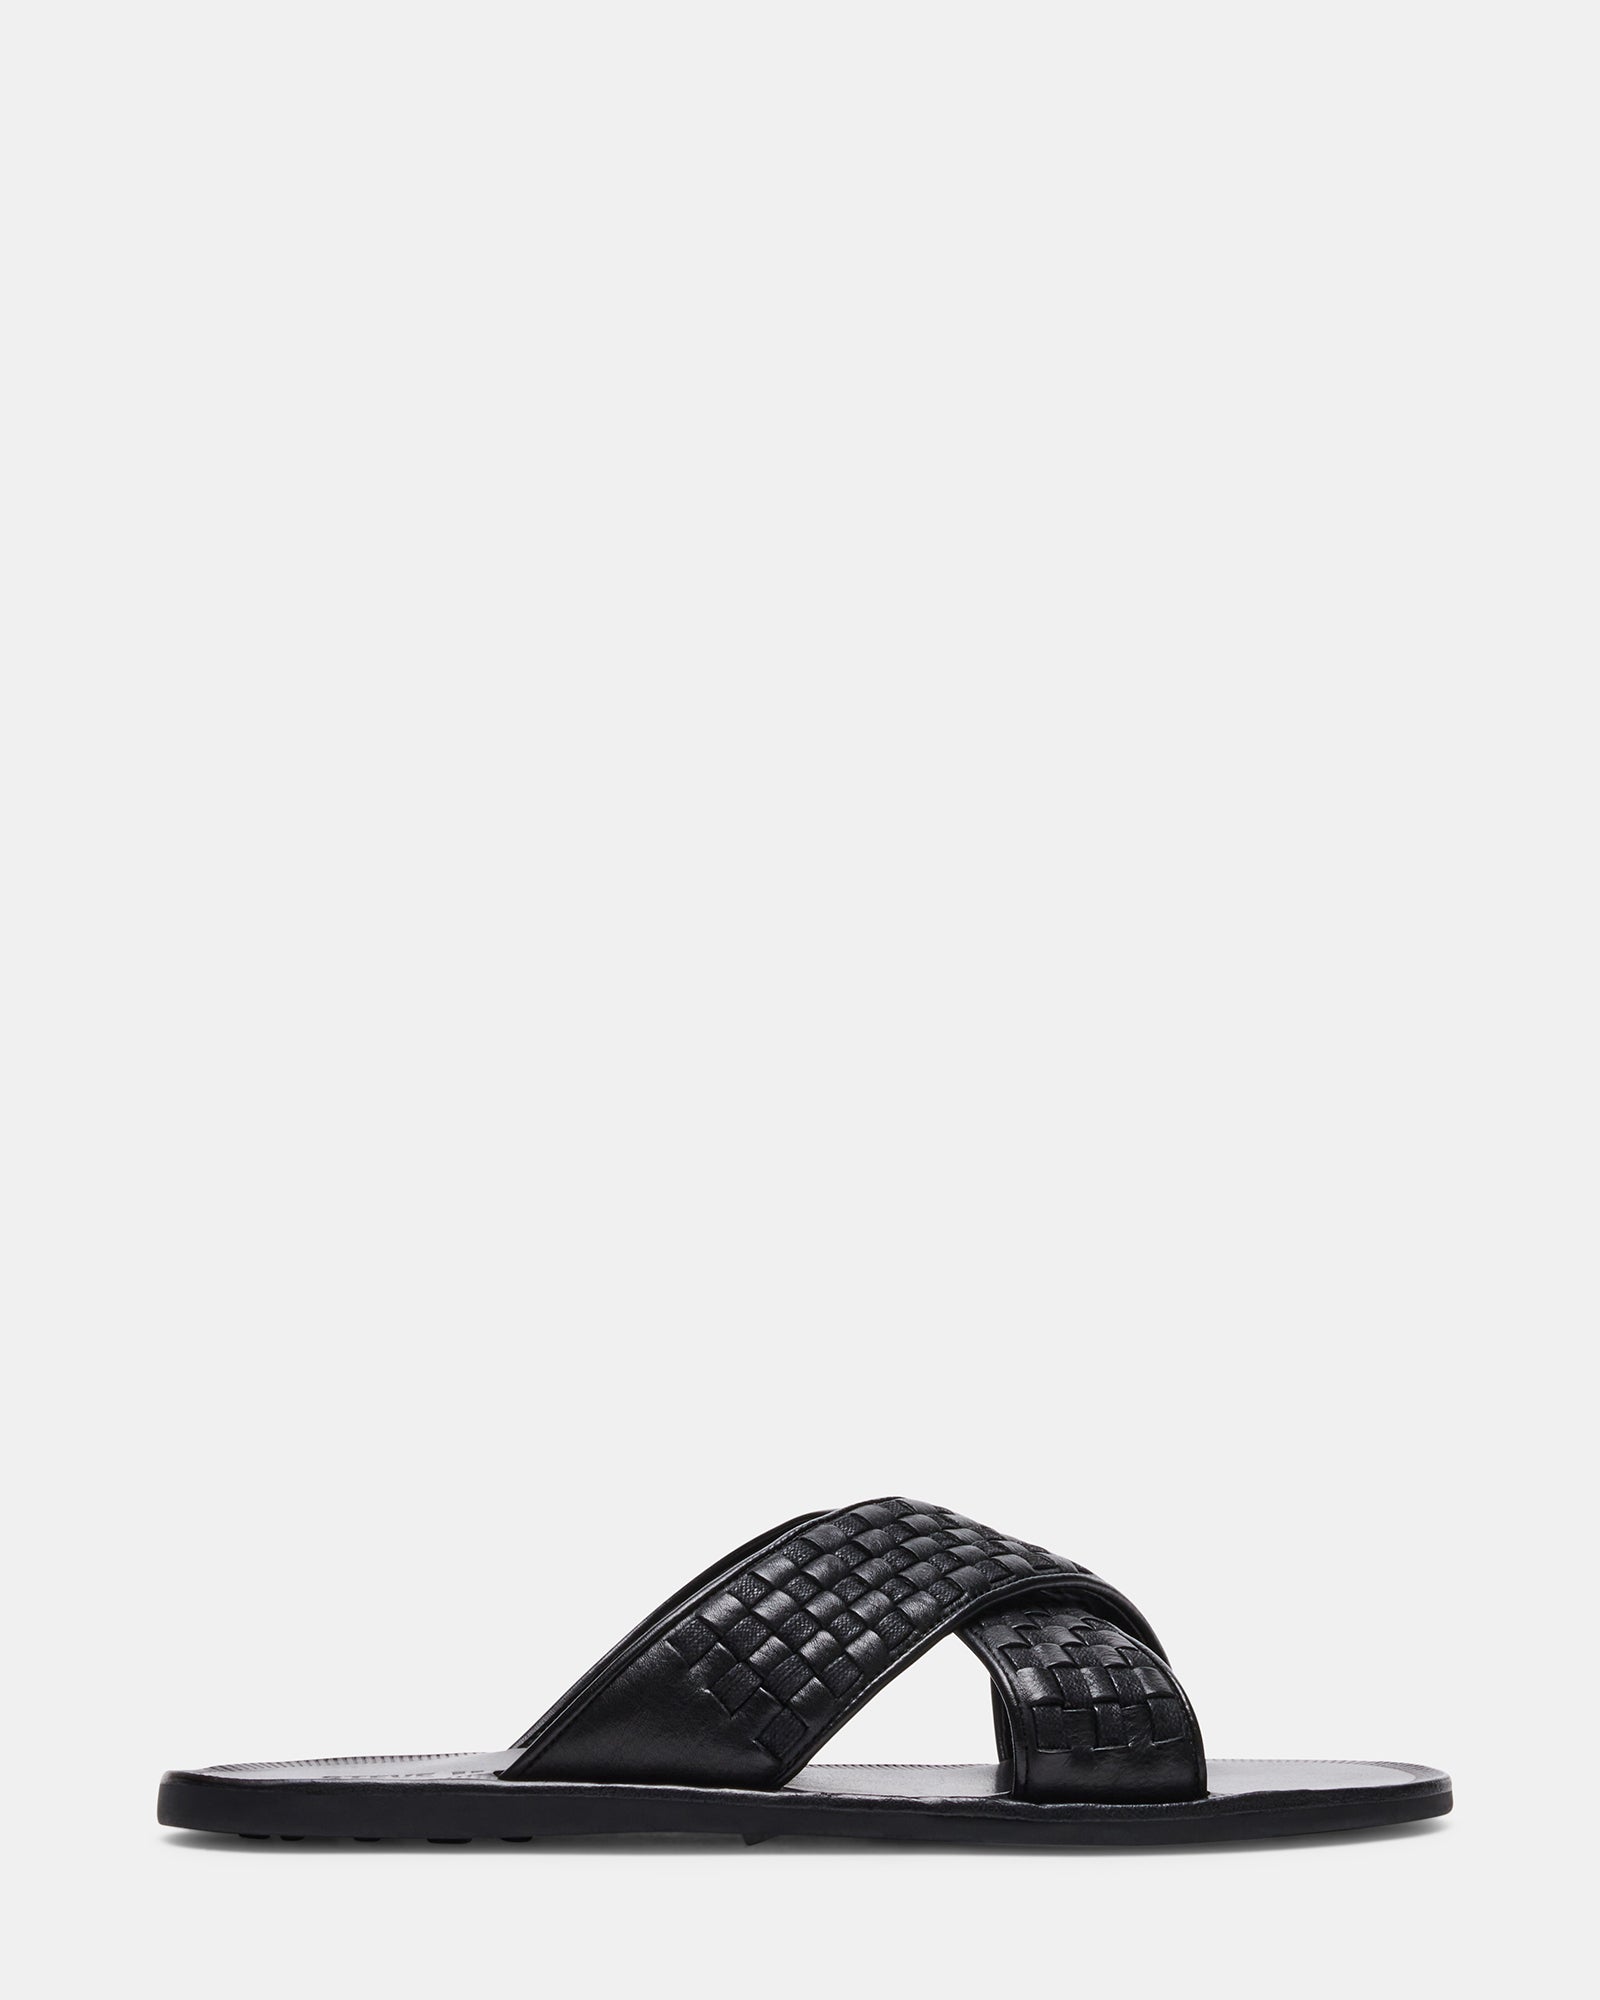 LUKKE Black Leather Slide Sandal | Men's Sandals – Steve Madden